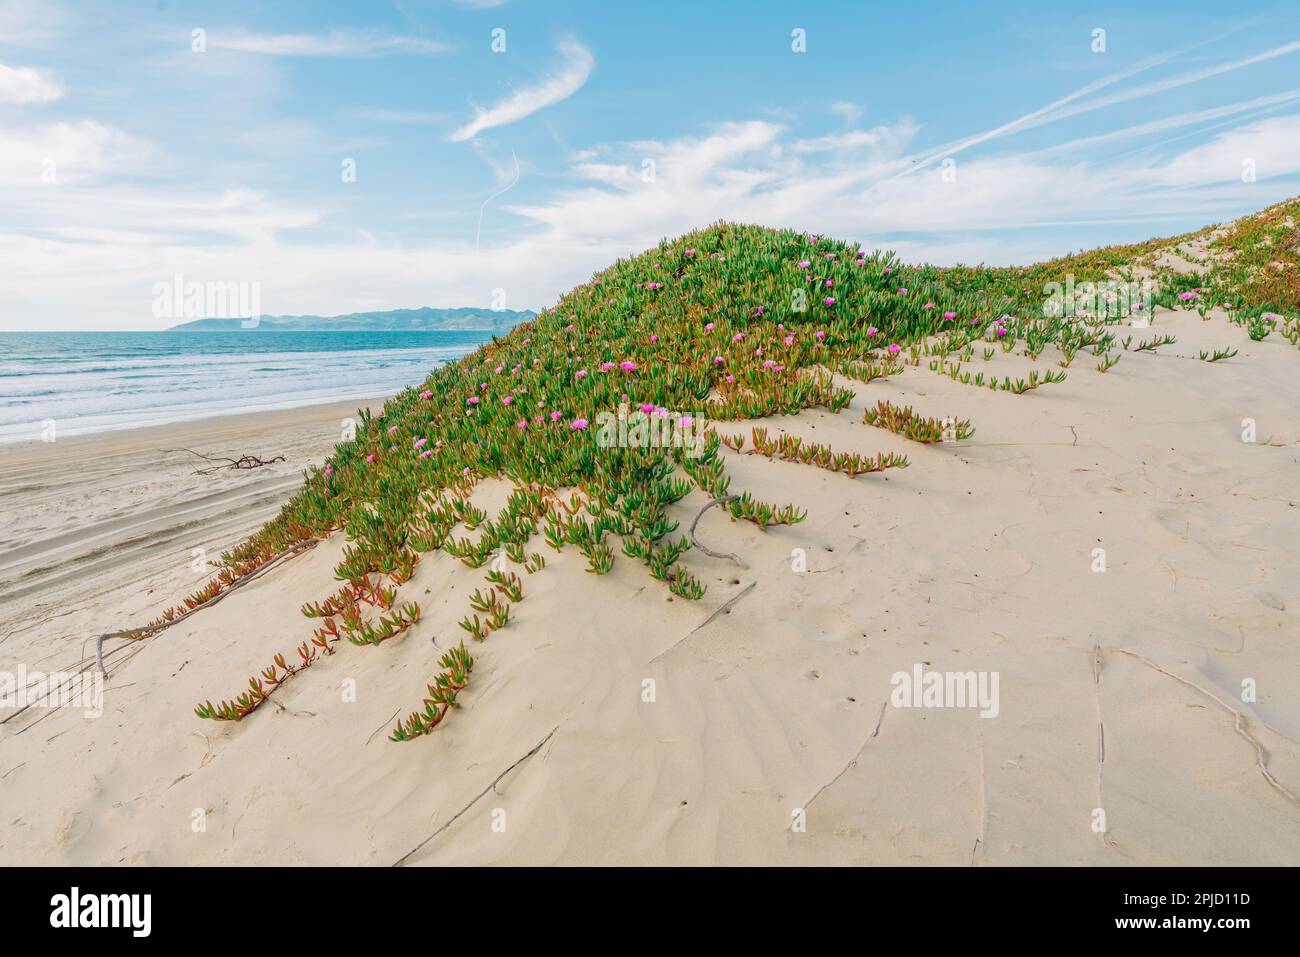 Am Strand blühende Segefeisblumen oder Eispflanzen. Sanddünen und einheimische Pflanzen, kalifornische Küstenlandschaft Stockfoto